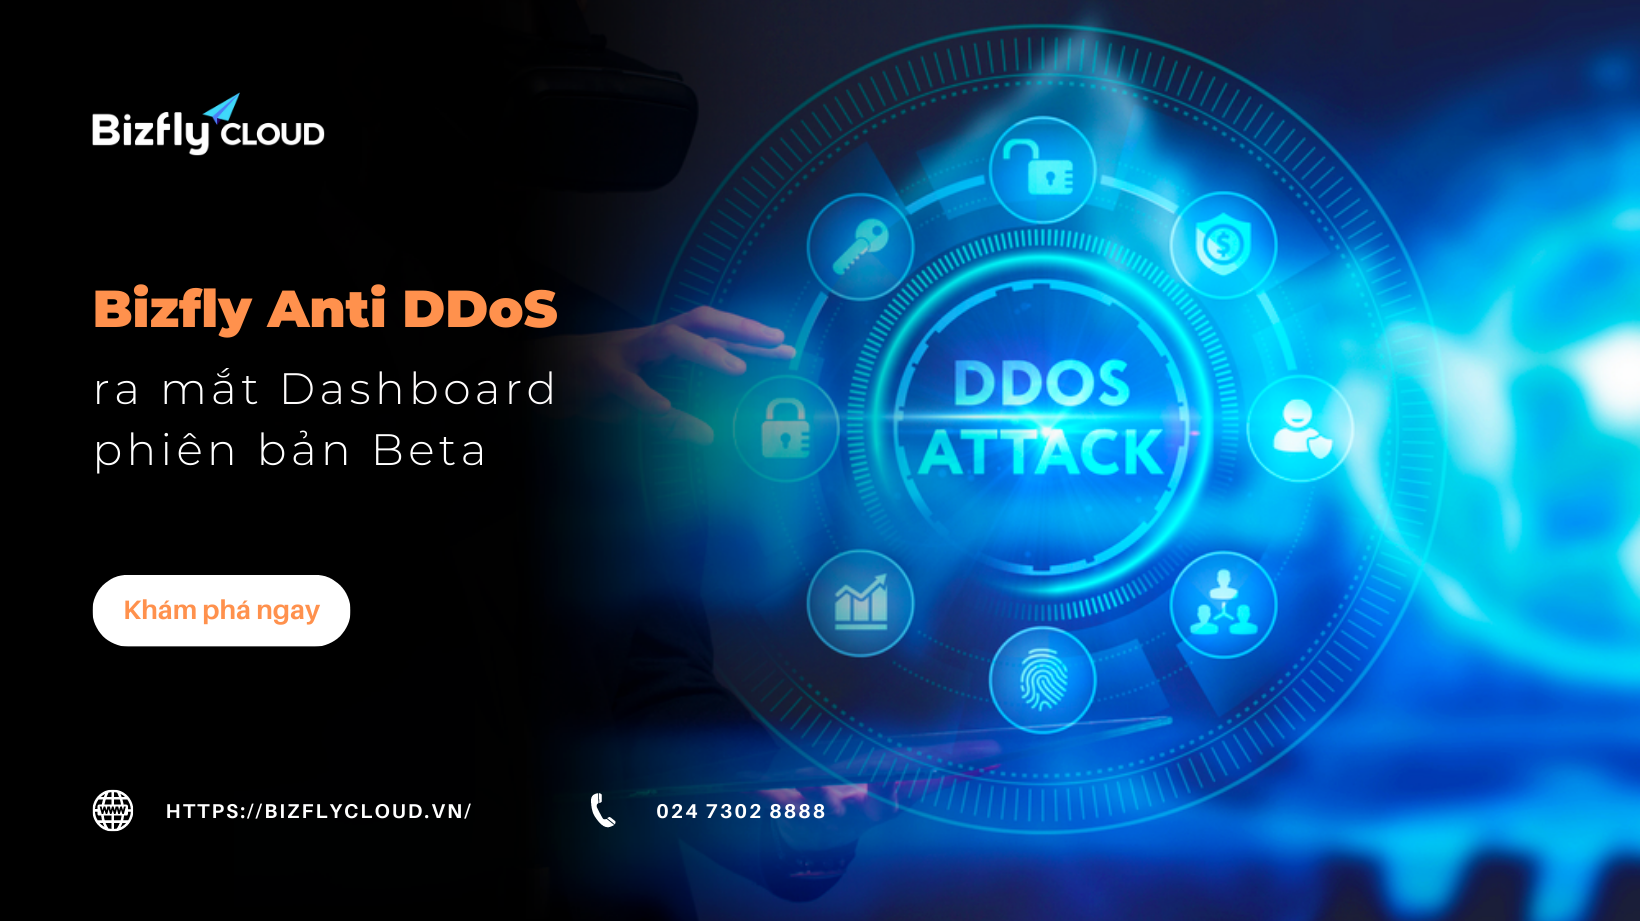 Bizfly Anti DDoS chính thức ra mắt Dashboard phiên bản Beta